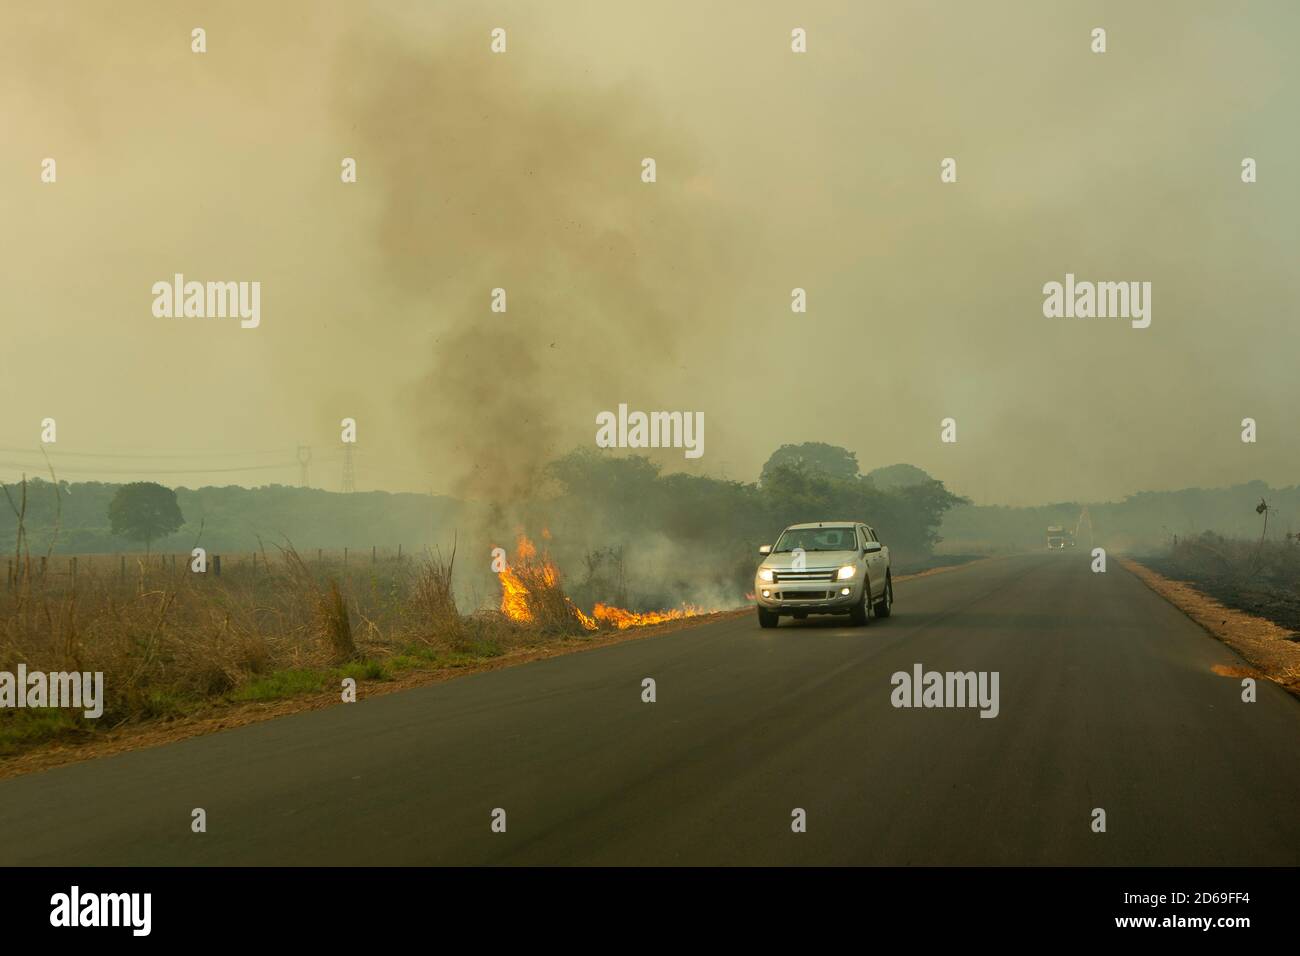 Feu et fumée sur la route BR 163 sur Amazon pendant la saison sèche et conduite floue de voiture à proximité des flammes. Etat para, Brésil. Concept d'environnement. Banque D'Images